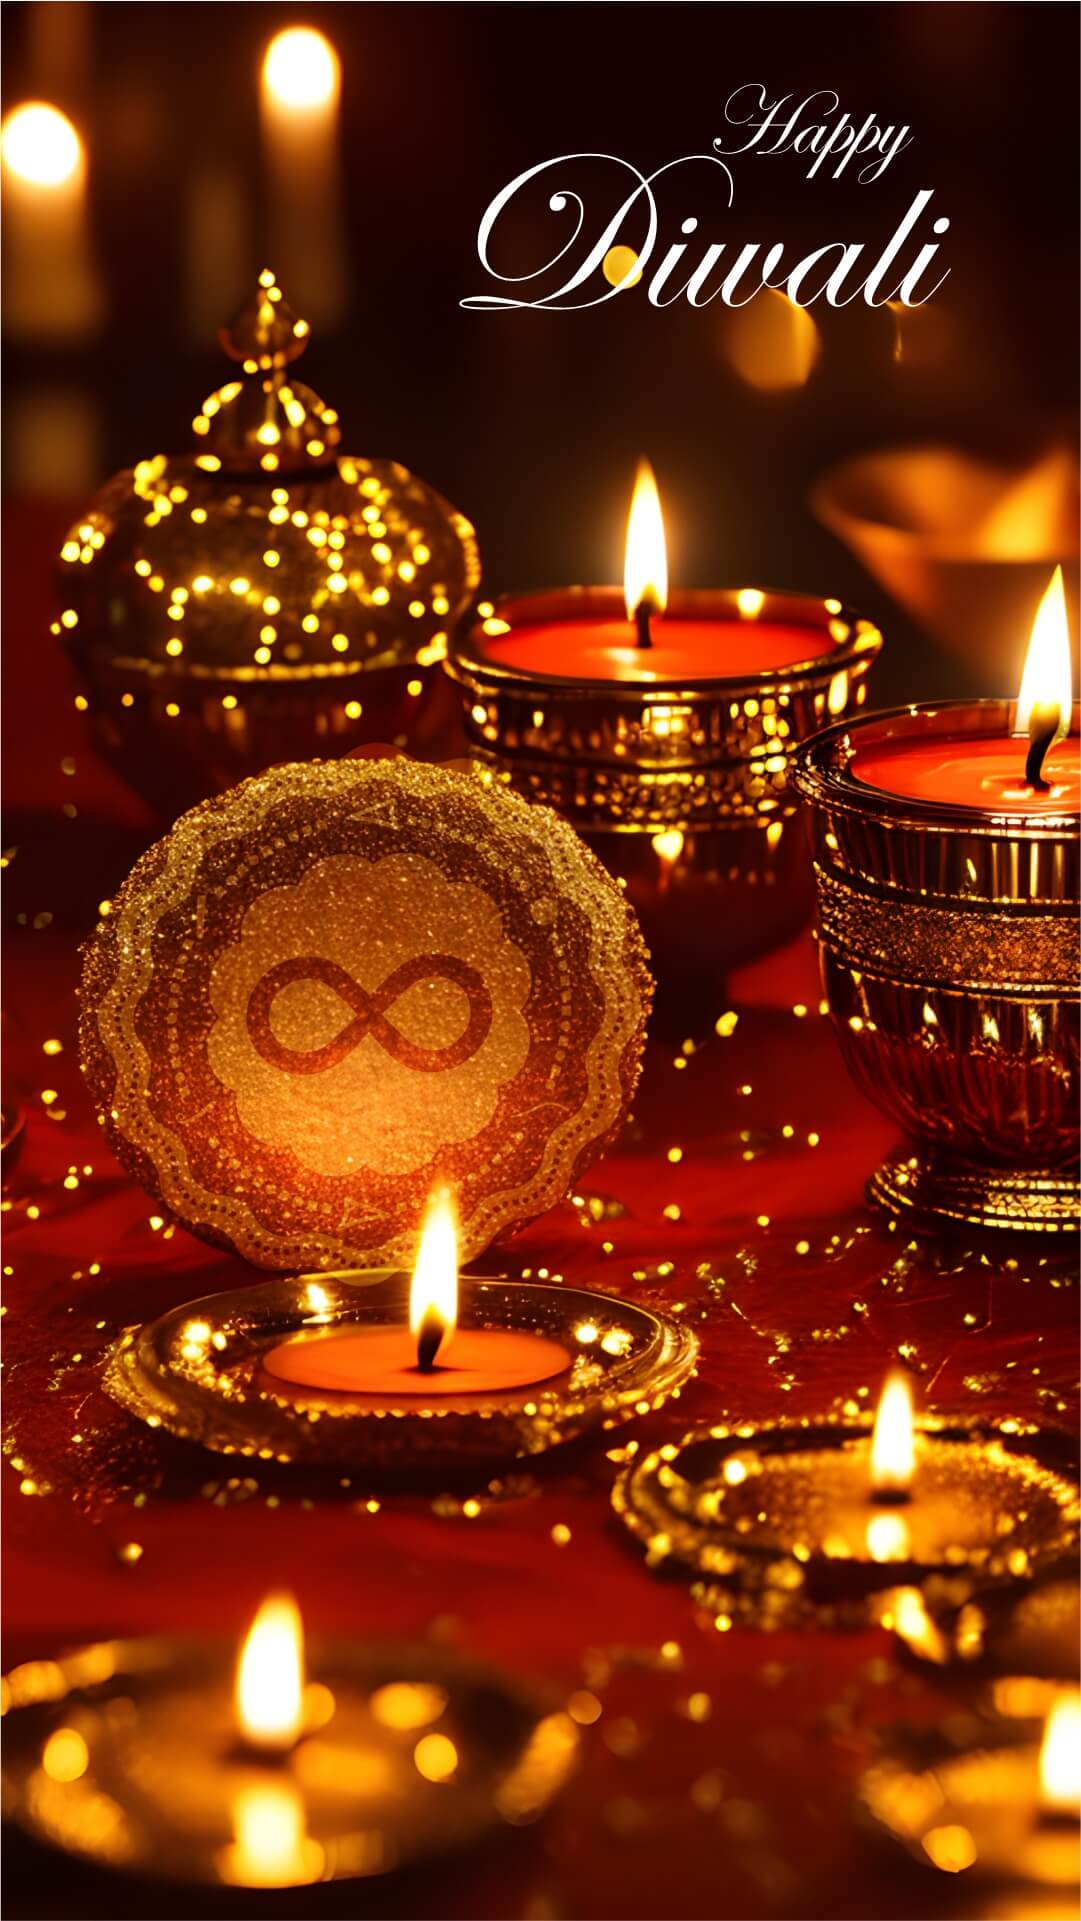 Happy Diwali Story